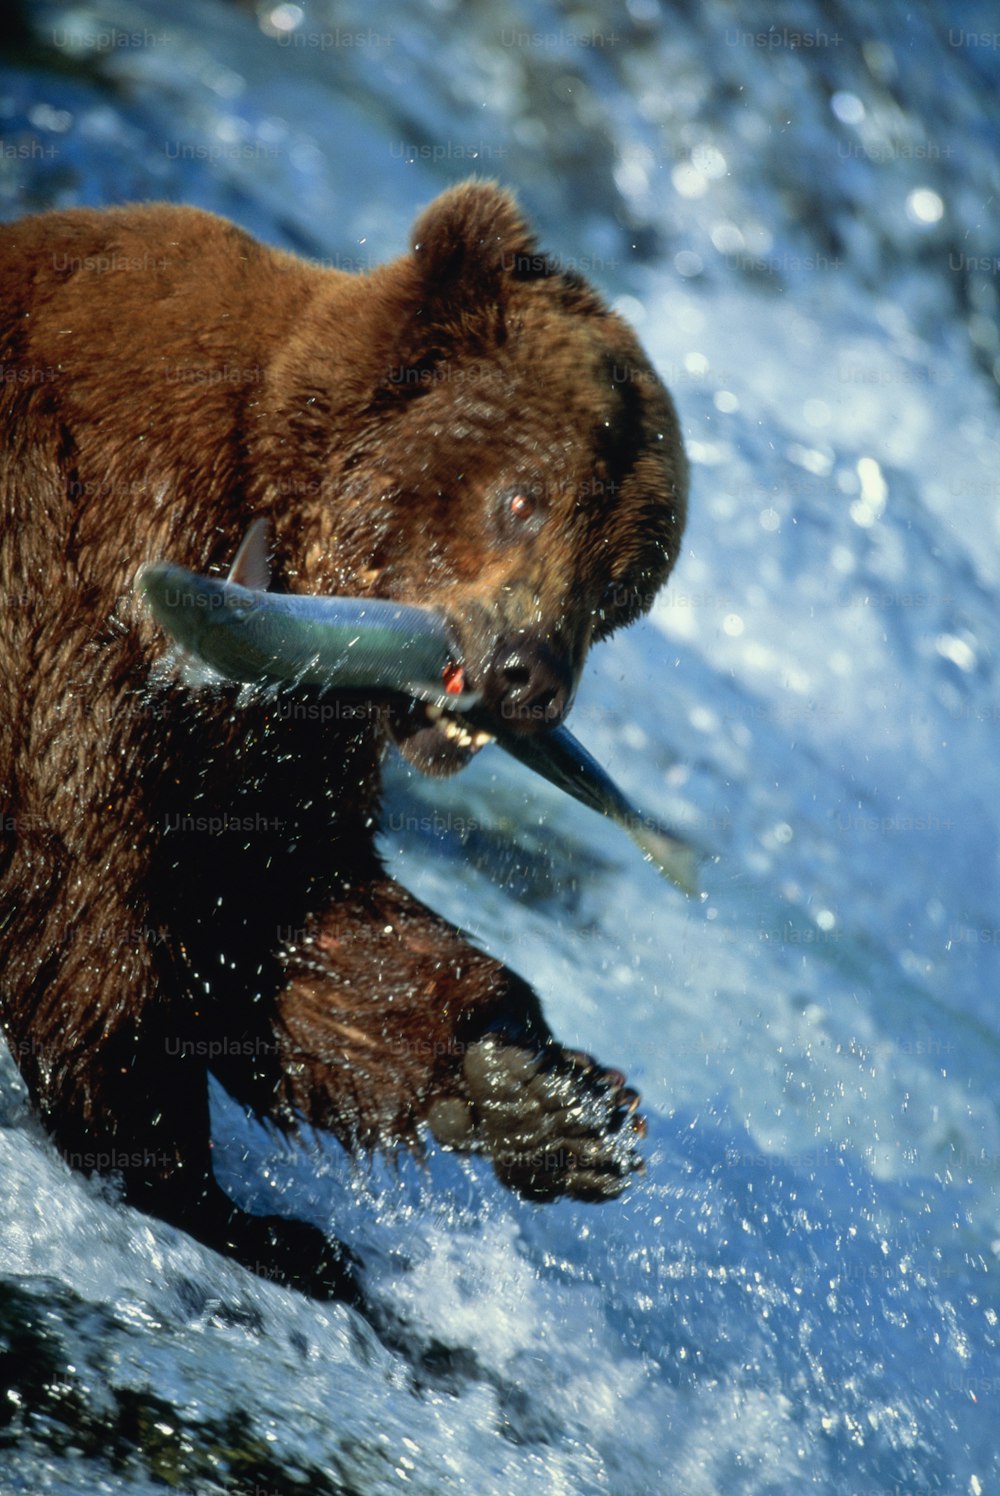 Katmai Nat. Park, Alaska (wichtigstes Laichgebiet für Lachse). Anderer gebräuchlicher Name: Grizzlybär. Manchmal als Unterart Ursus arctos horribilis klassifiziert. Heimisch in Nordwestamerika, Alaska, Kanada und Russland, isolierte Populationen in Europa.